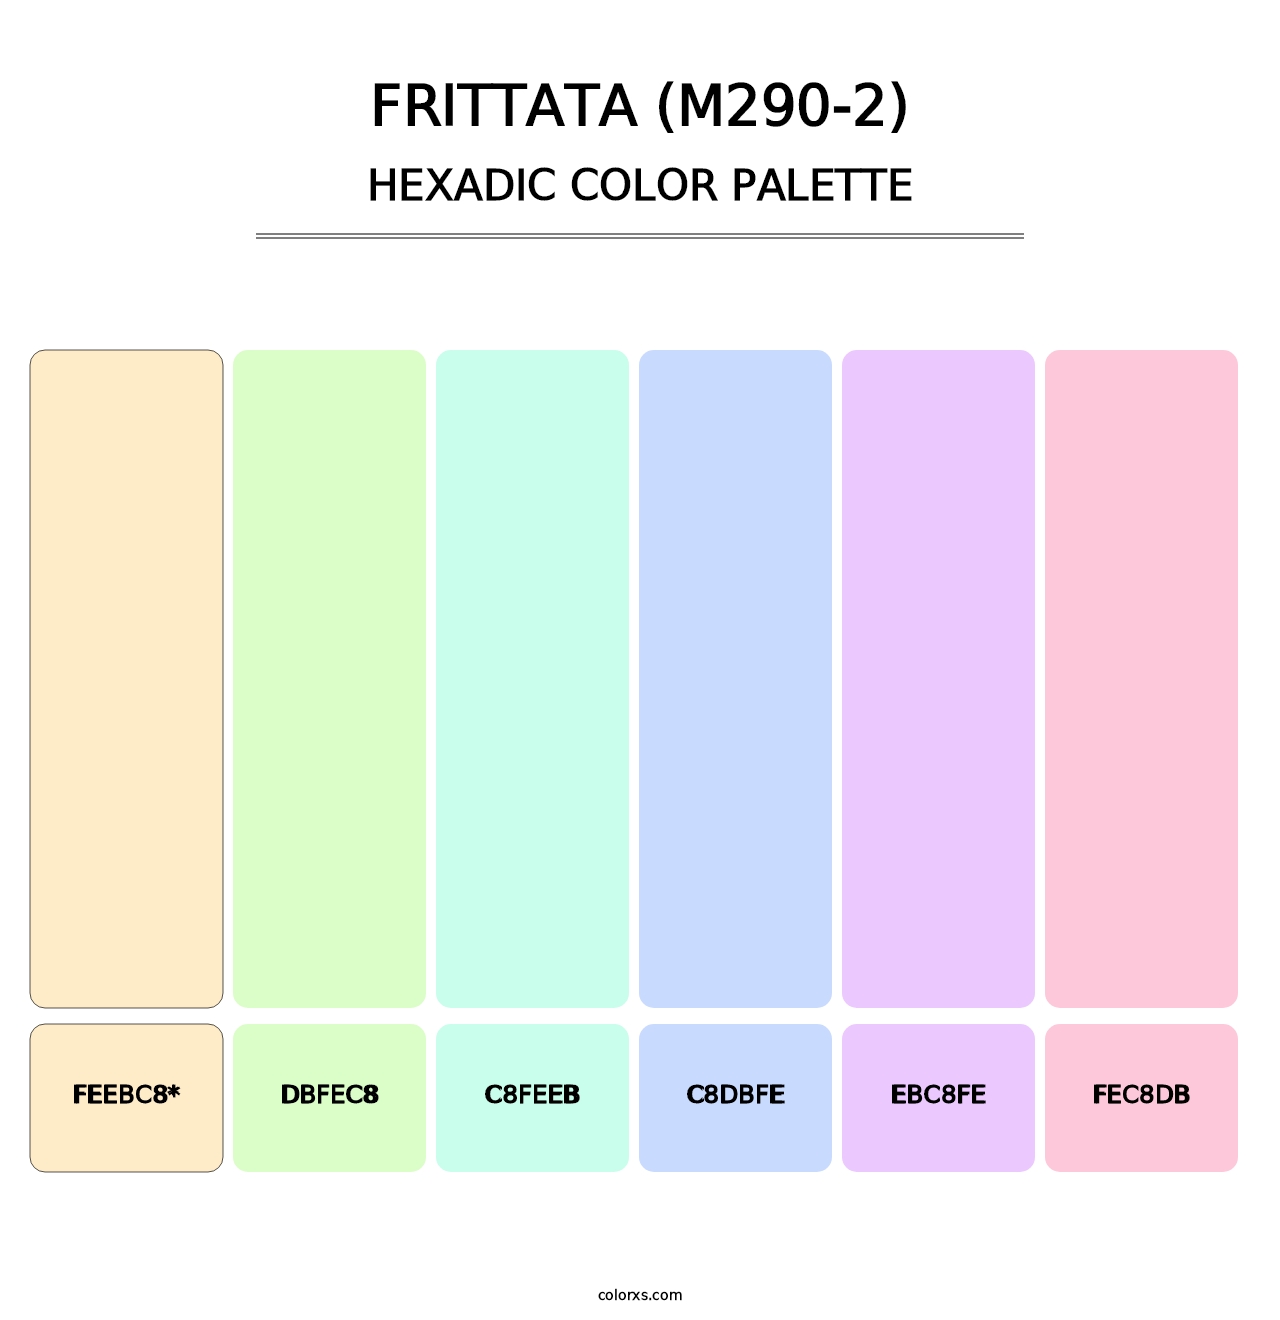 Frittata (M290-2) - Hexadic Color Palette